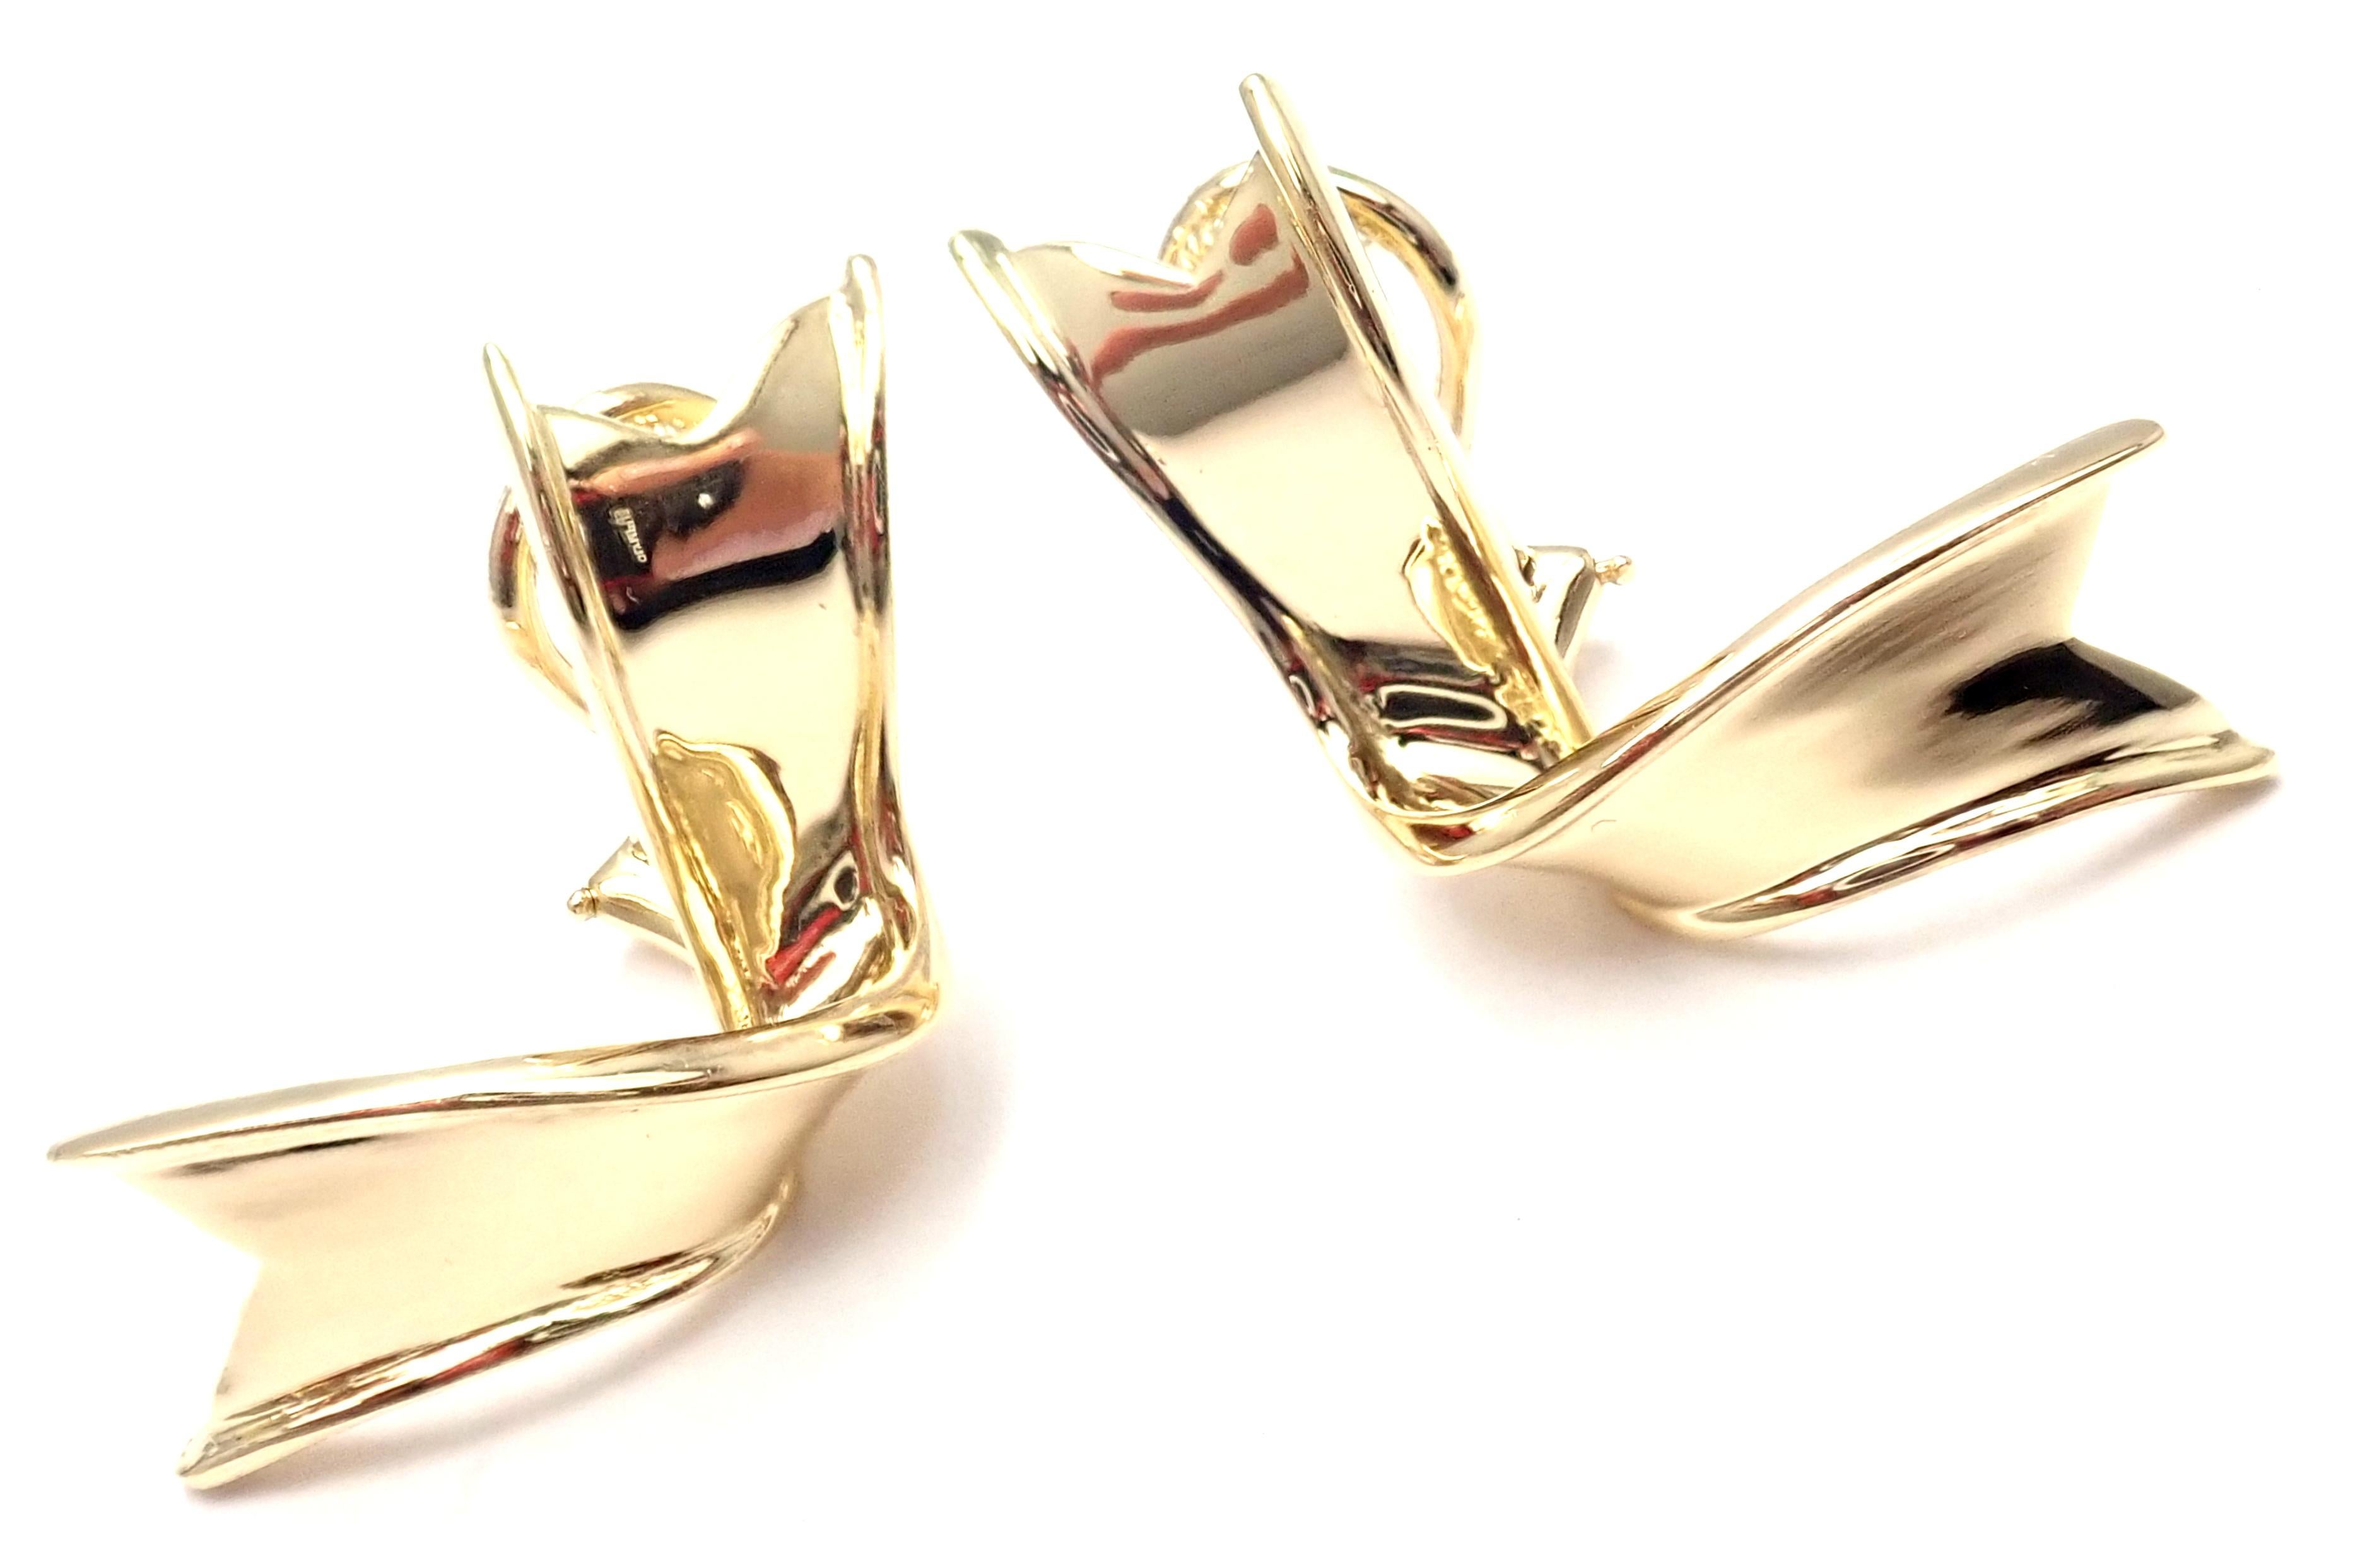 Boucles d'oreilles ruban vintage en or jaune 18k de Tiffany & Co.
Ces boucles d'oreilles sont faites pour les oreilles percées.
Détails :
Poids : 9,9 grammes
Dimensions : 33mm x 16mm
Poinçons estampillés : AT&T 750 18k 1988
*Envoi gratuit au sein